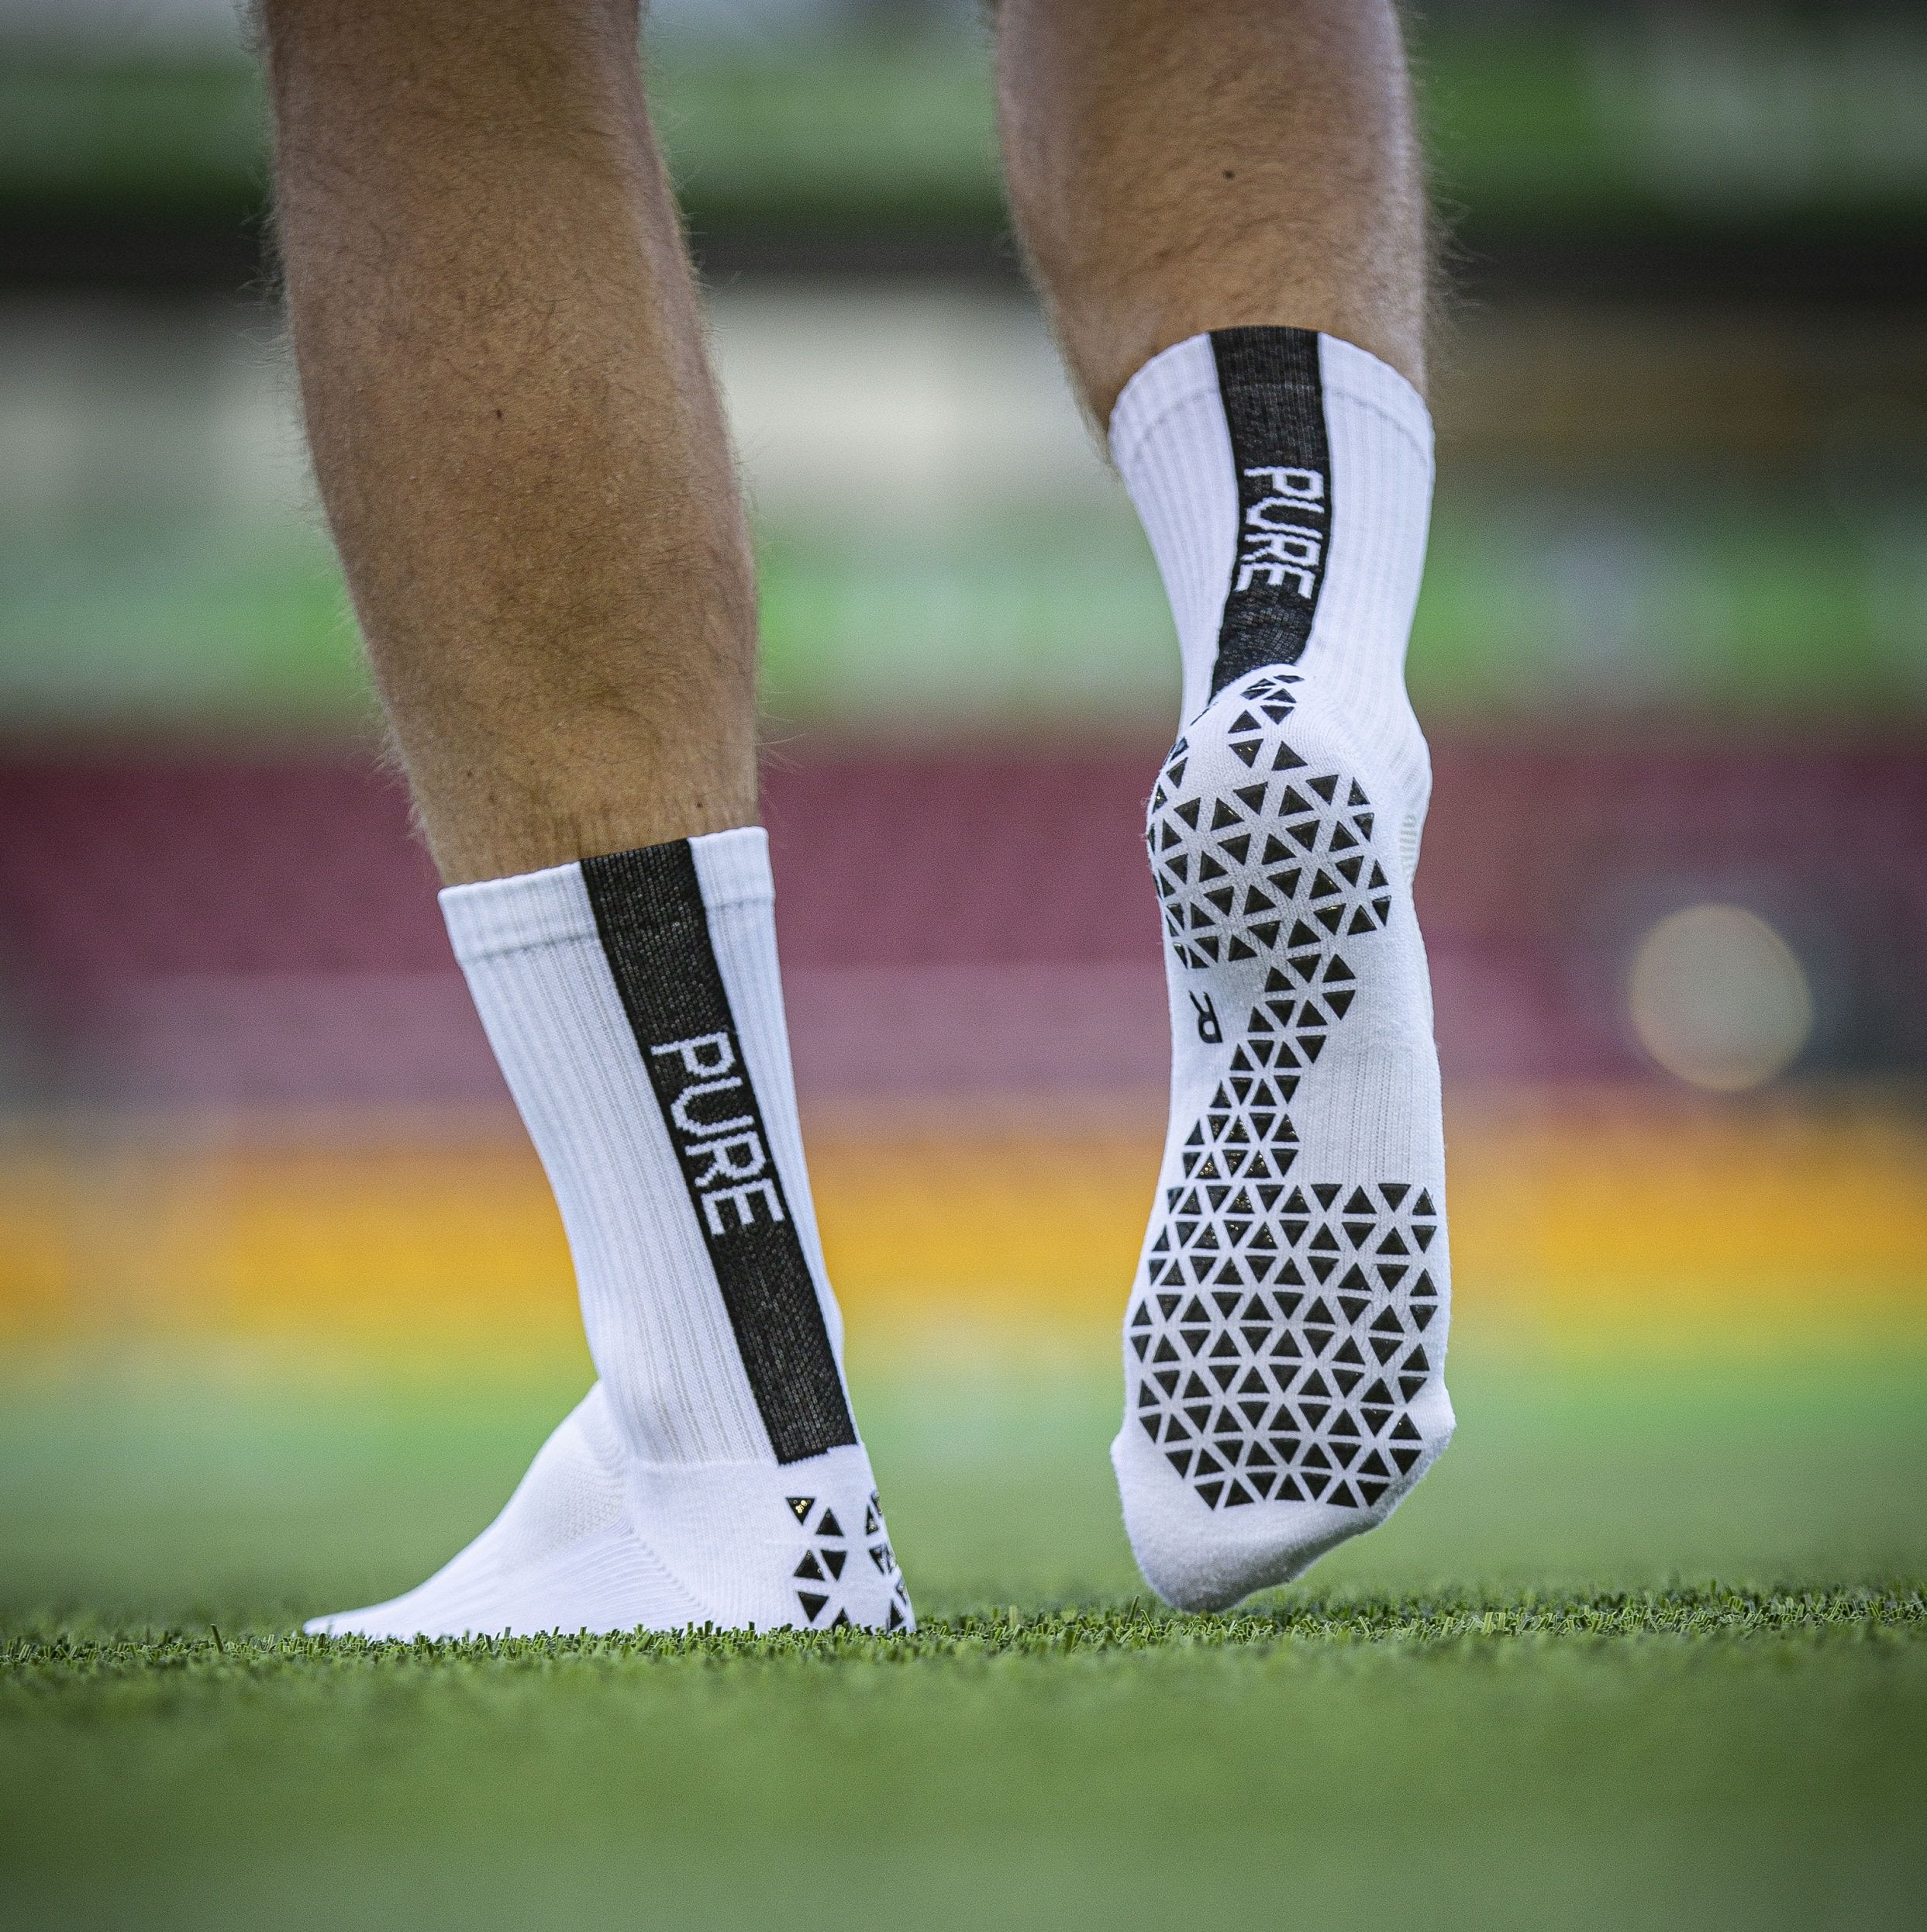 Rugby Socks, Grip Socks